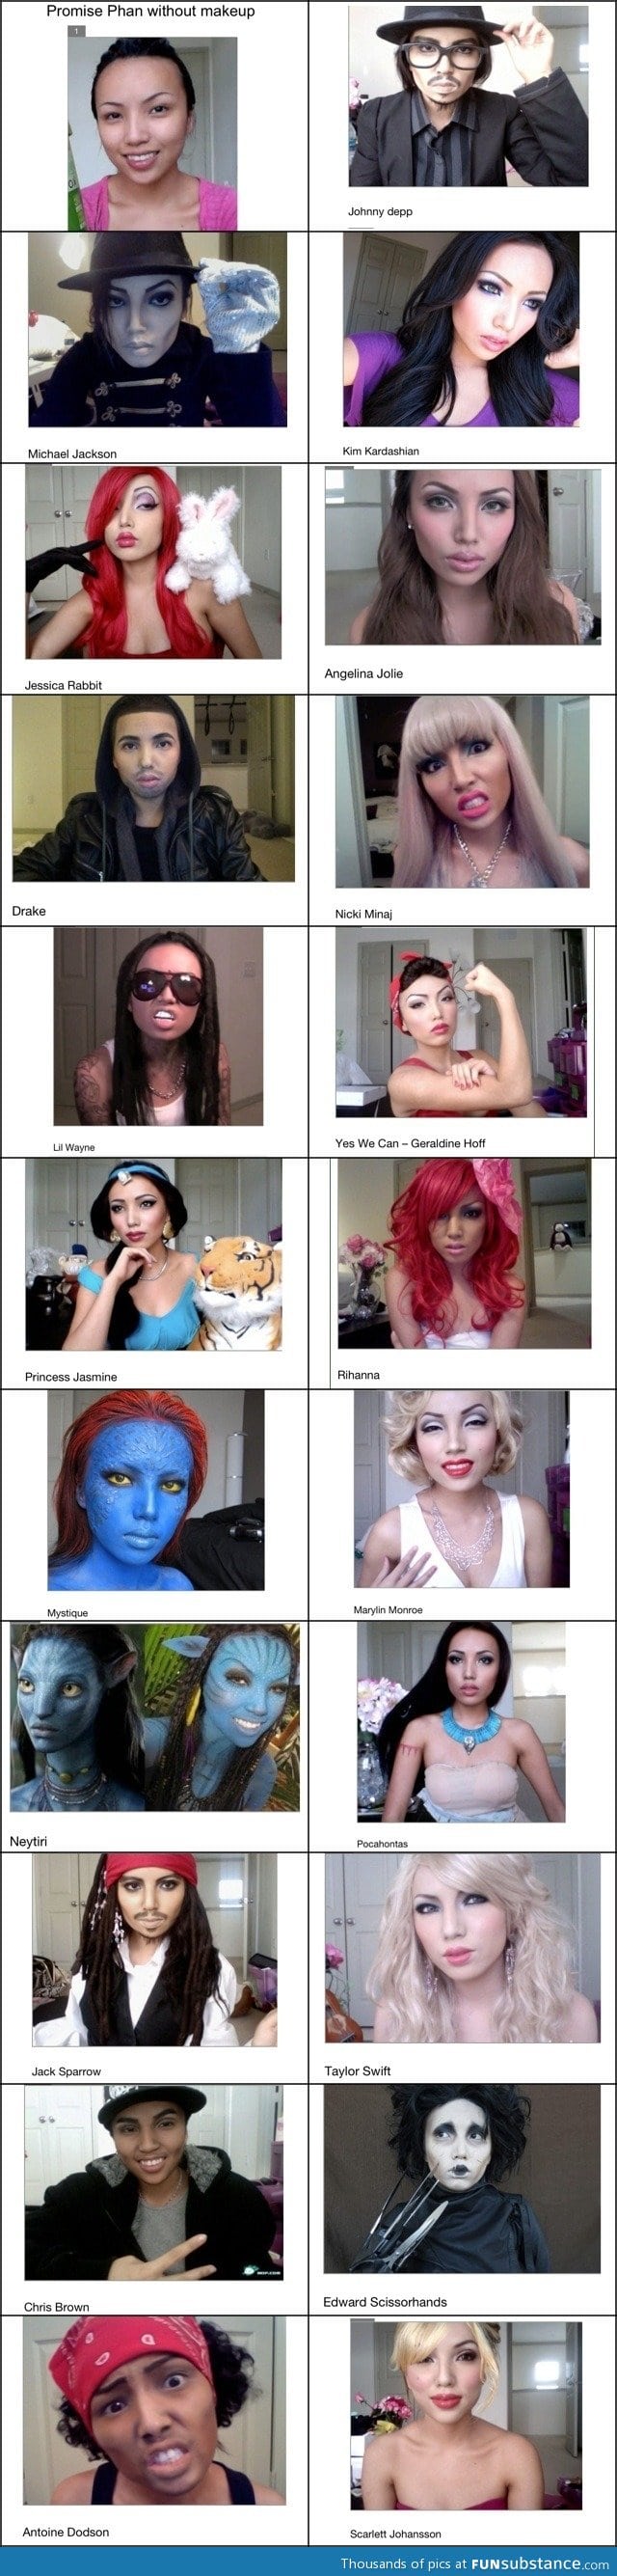 Amazing makeup to look like celebrities